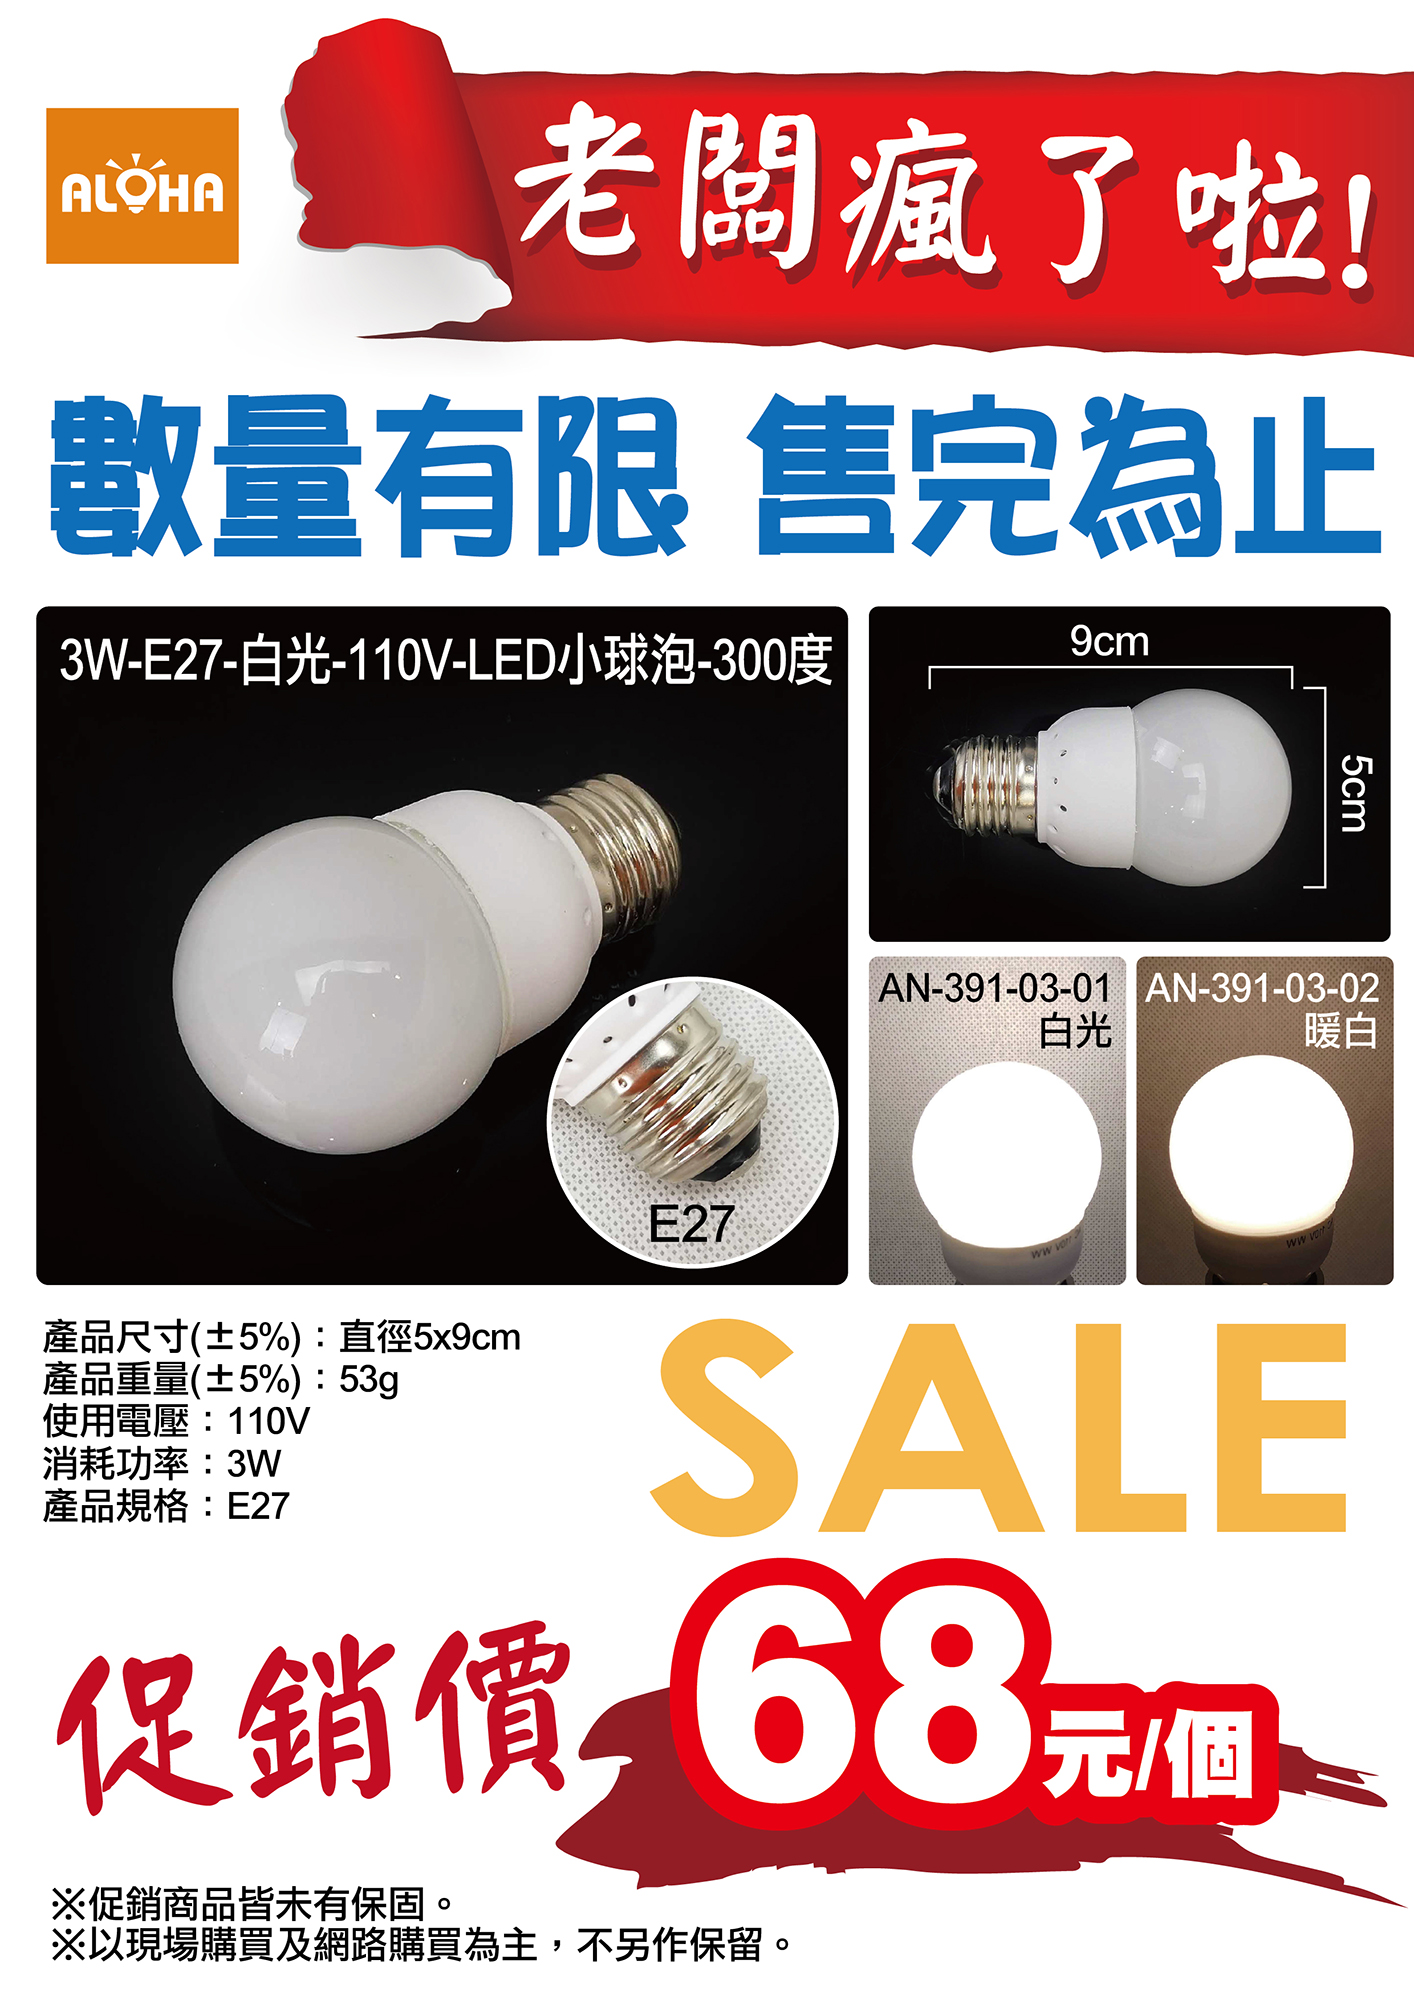 3W-E27-110V-LED小球泡-300度